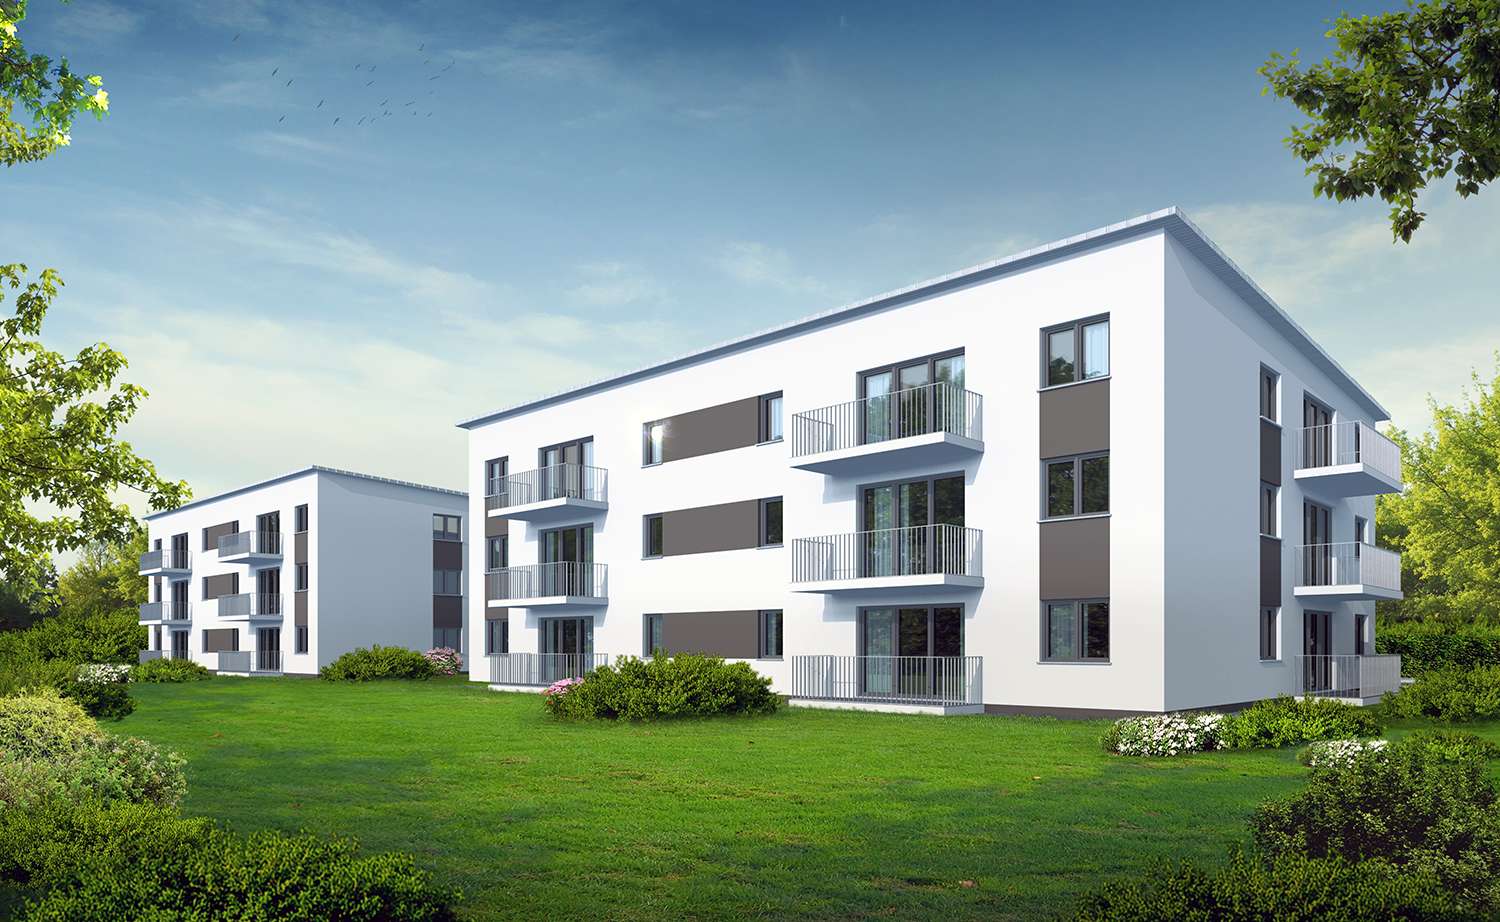 Architekturvisualisierungen Mehrfamilienhaus-Anlage bestehend aus 2 MFH visualisiert für Harsch Bau Immobilien GmbH aus 74532 Ilshofen (Jahr 2021). Hier die Terrassen-/Balkonenperspektive abgebildet